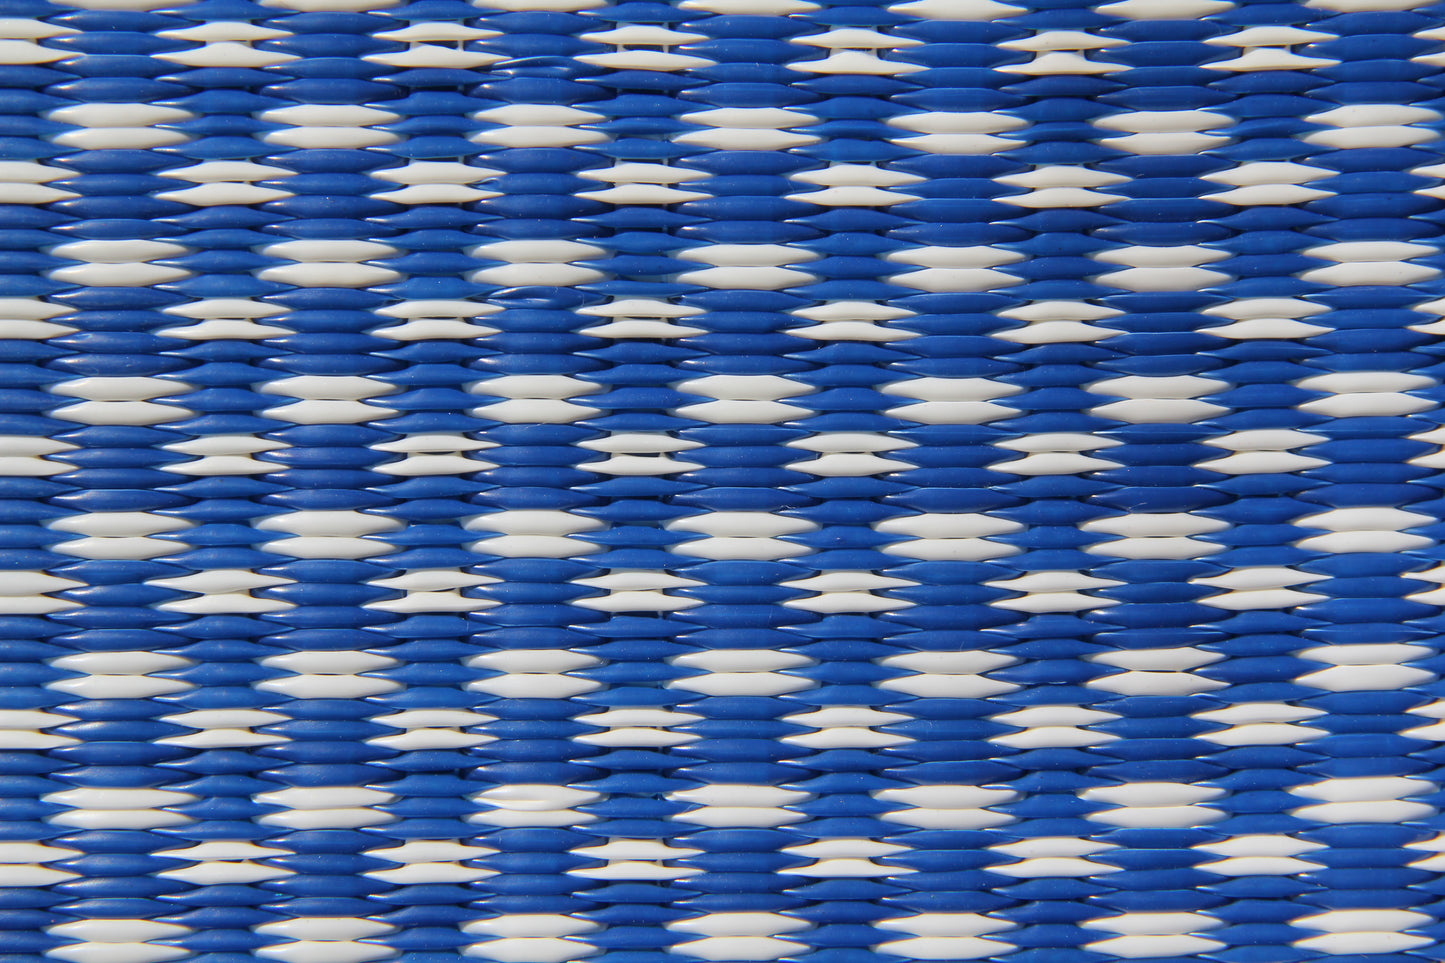 Basic Blue & White Outdoor Mat